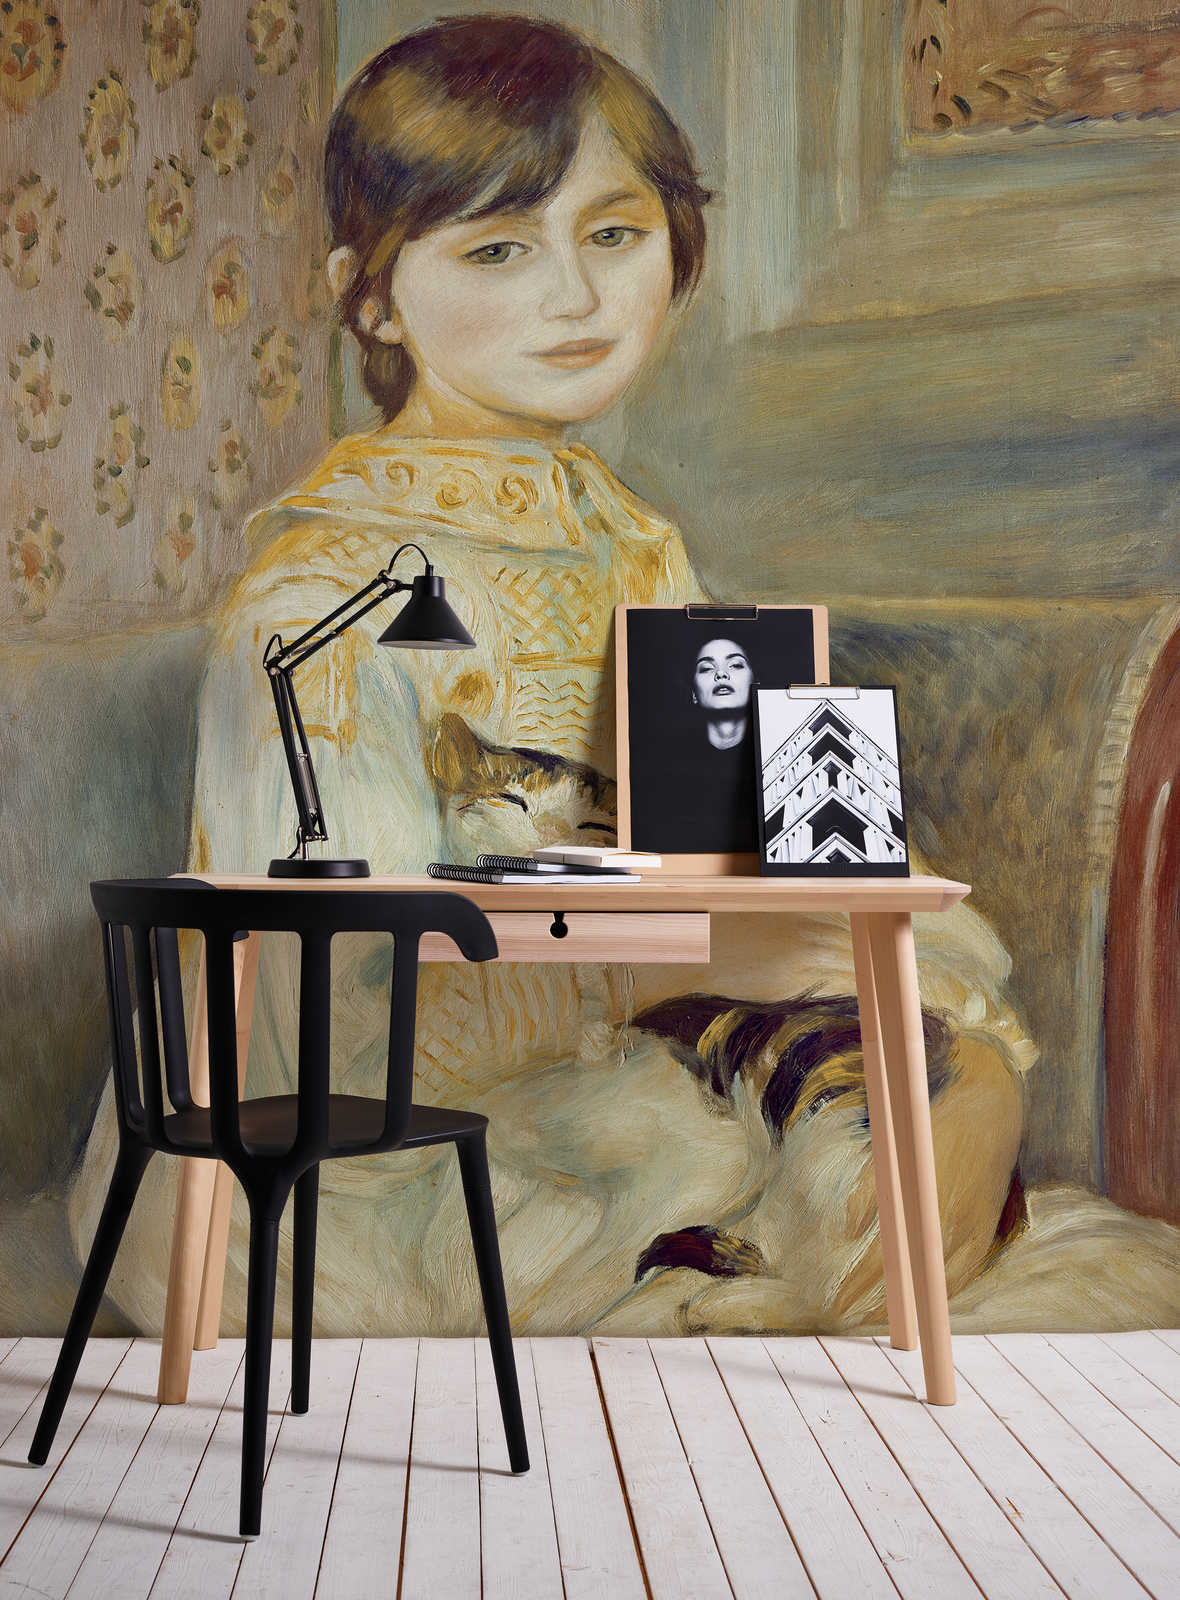             Mademoiselle Julie with cat mural by Pierre Auguste Renoir
        